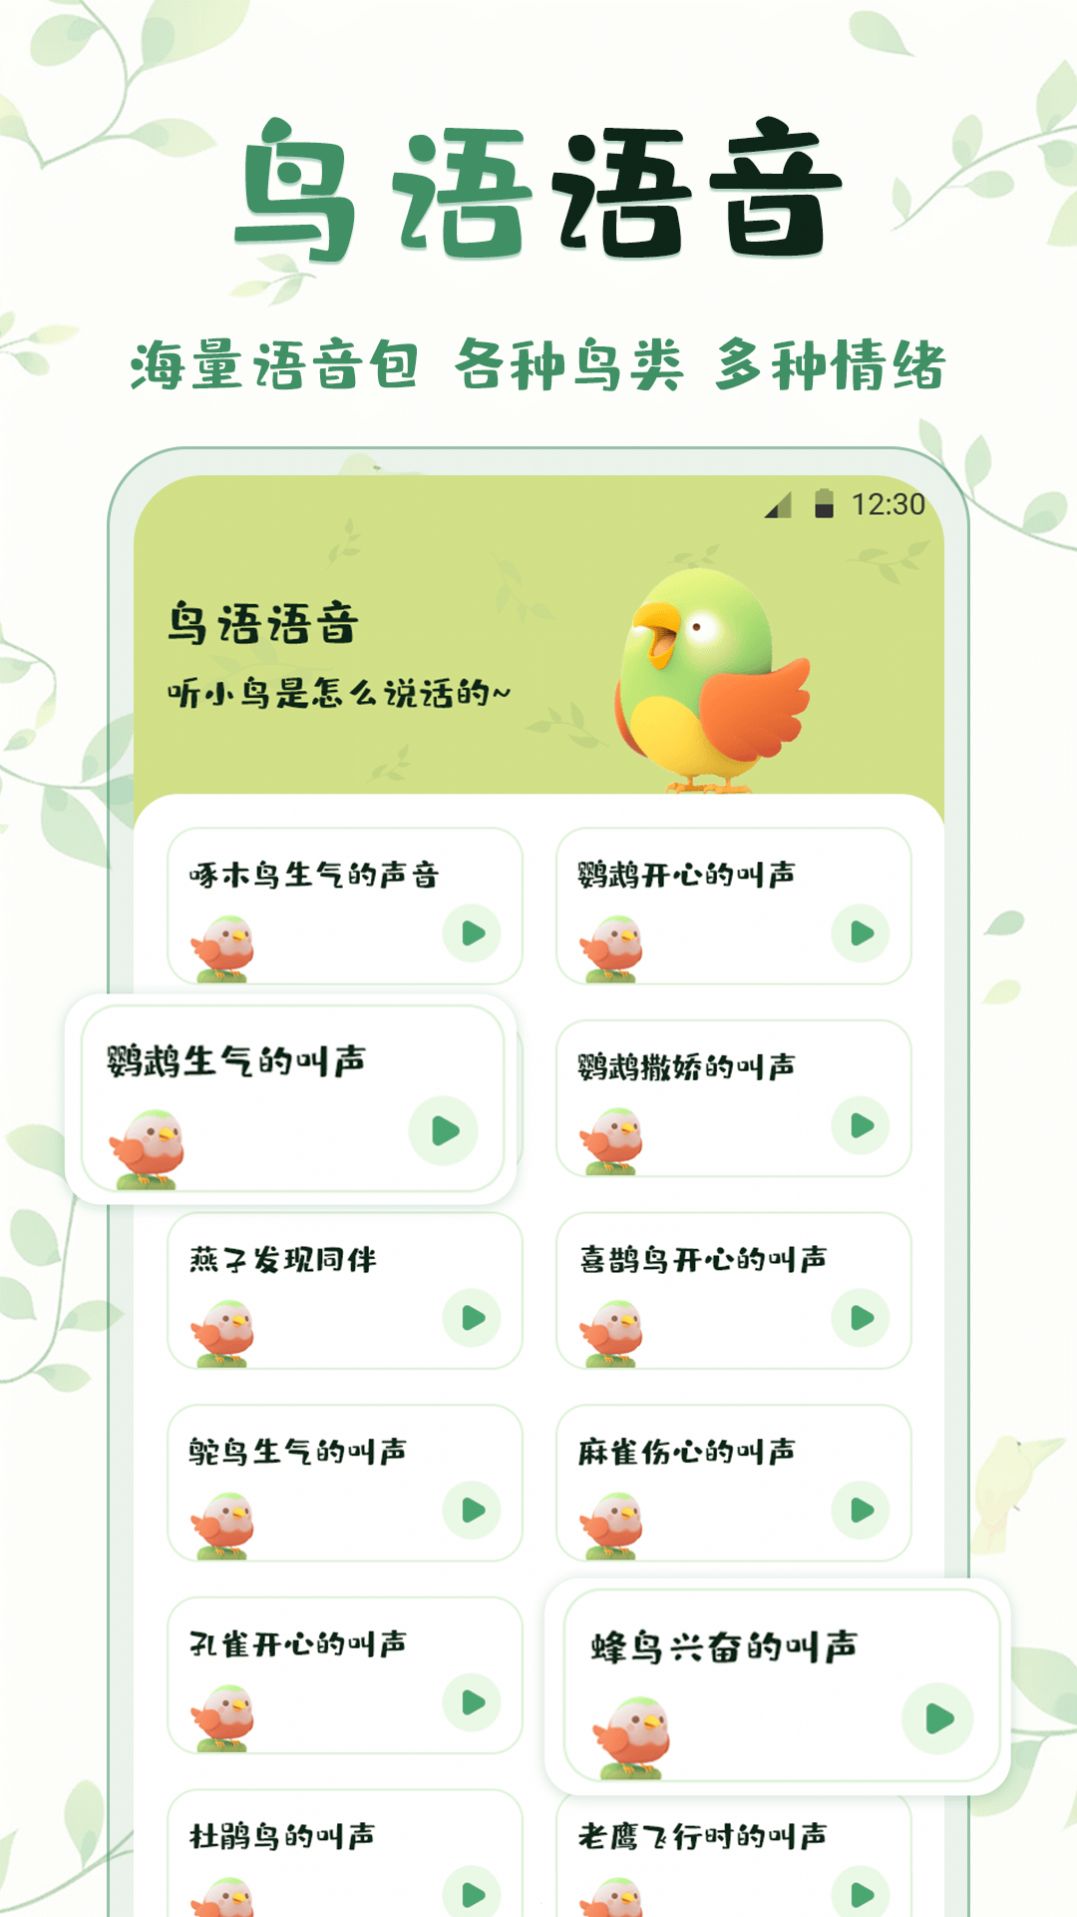 鸟语翻译精灵软件下载官方版图片1